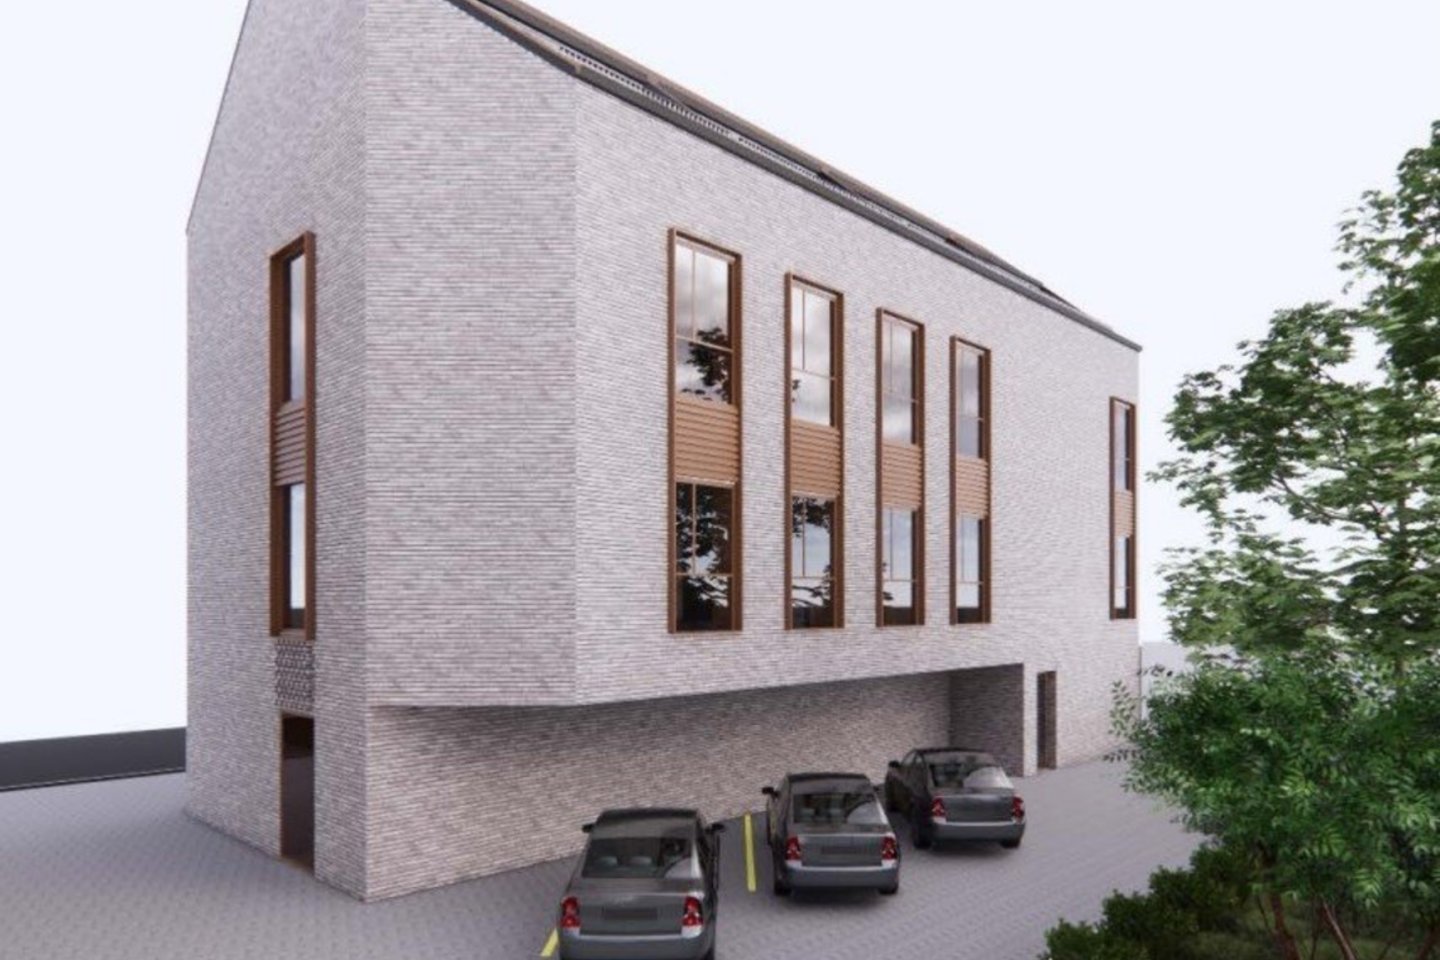 Naujamiestyje, greta Mindaugo „Maximos“, planuojama statyti naują administracinį pastatą su butais.<br>UAB „Urban architects“ vizual.